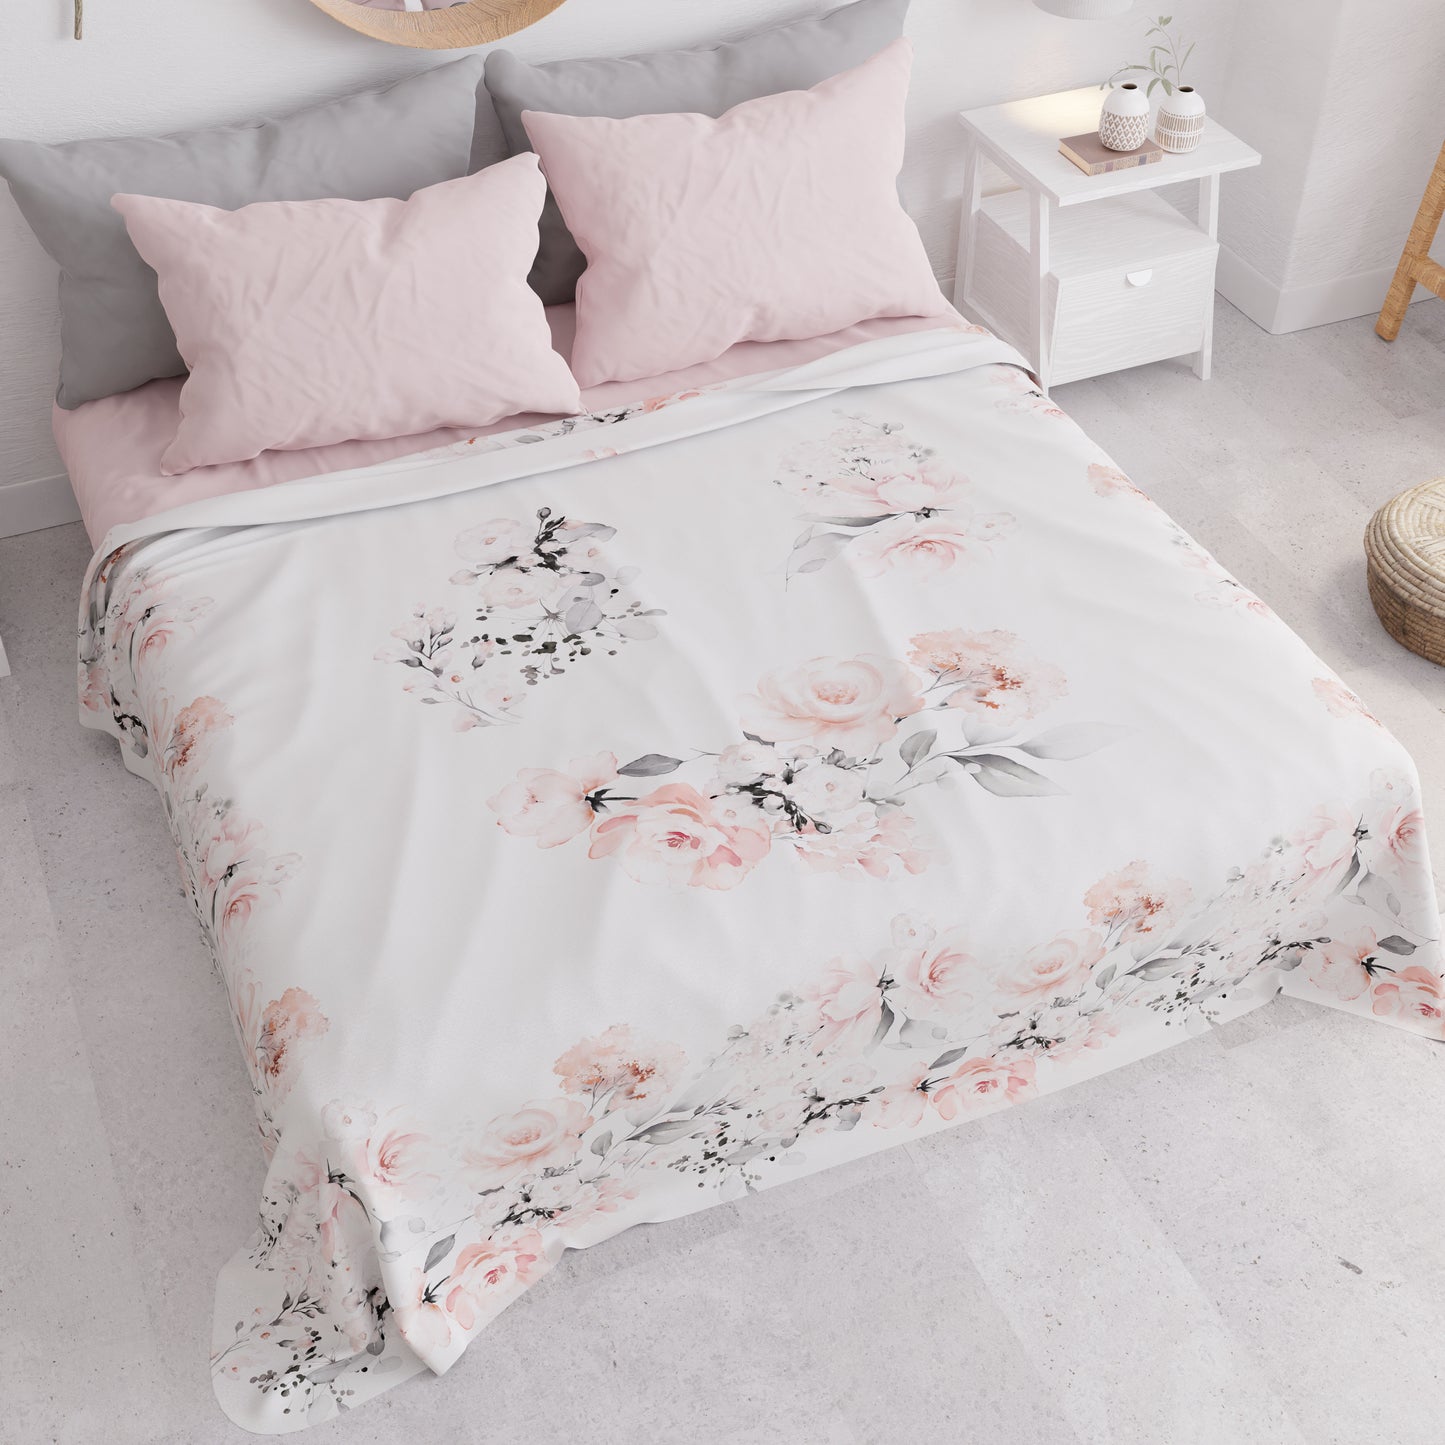 Summer Bedspread, Light Blanket, Bedspread Sheets, Gray Floral